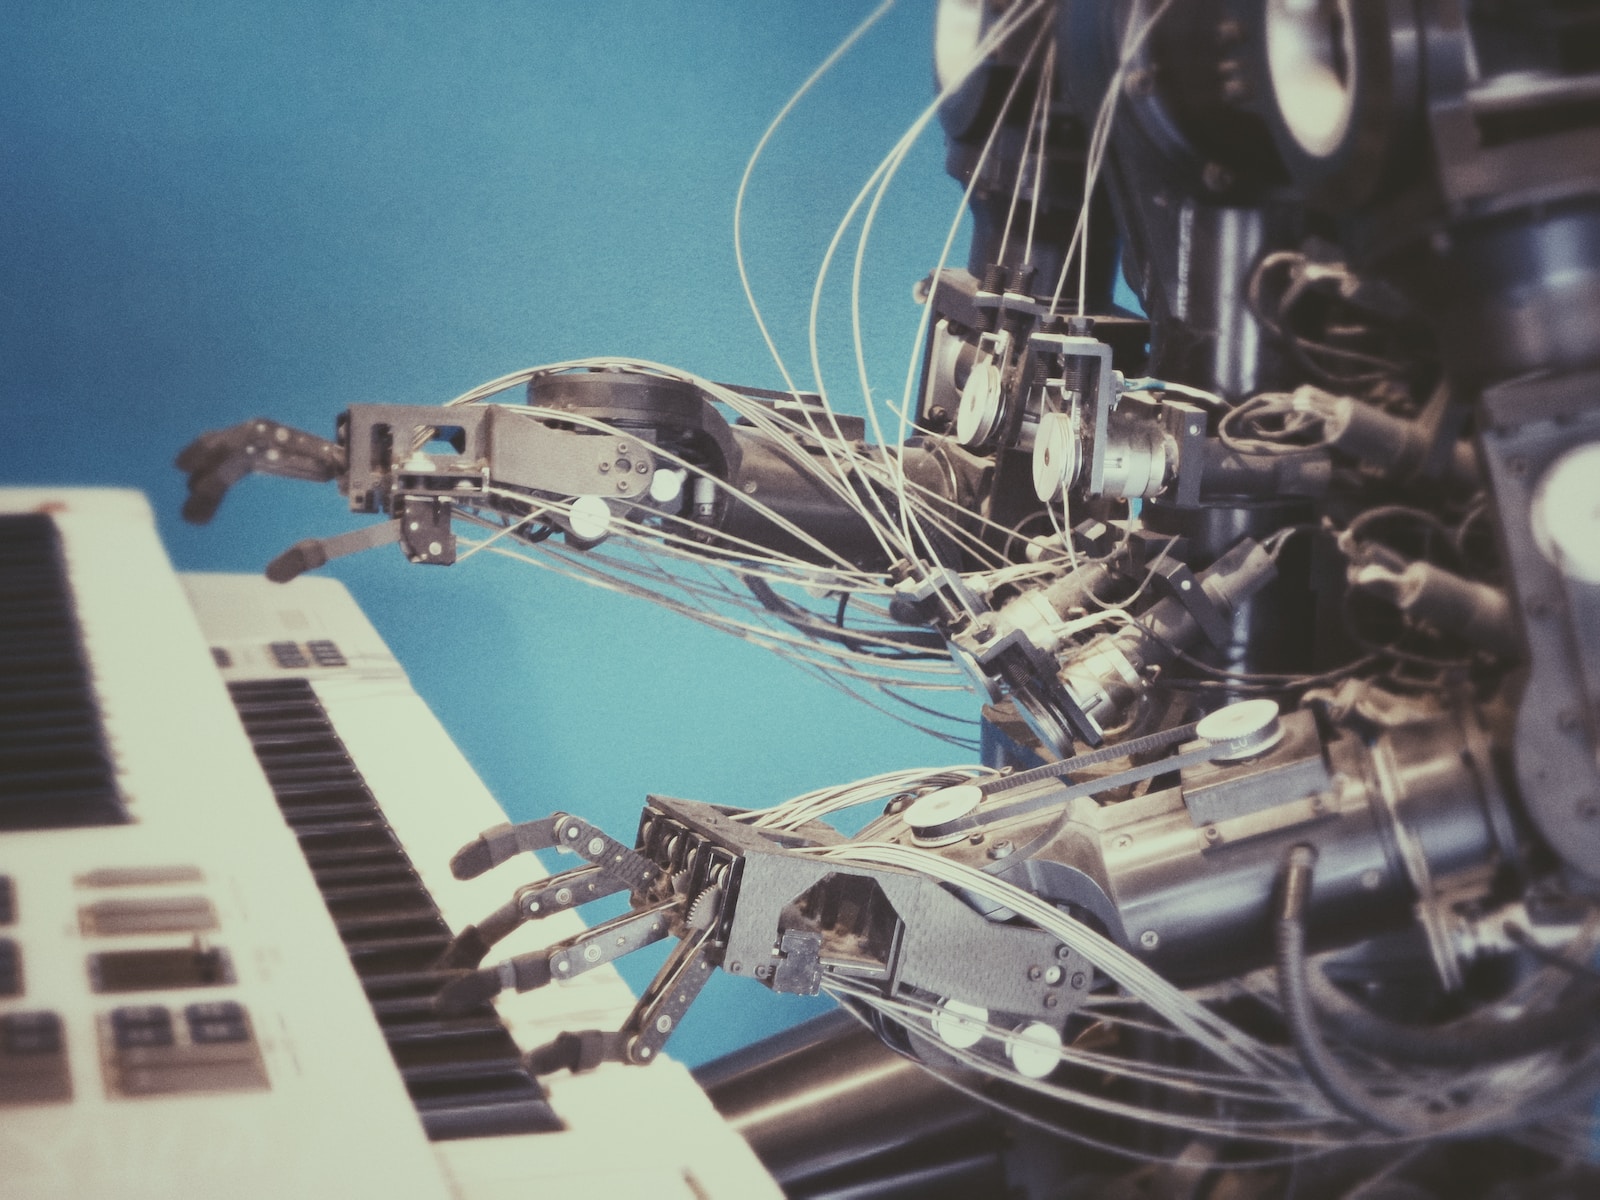 Un robot joue au clavier sur fond bleu.